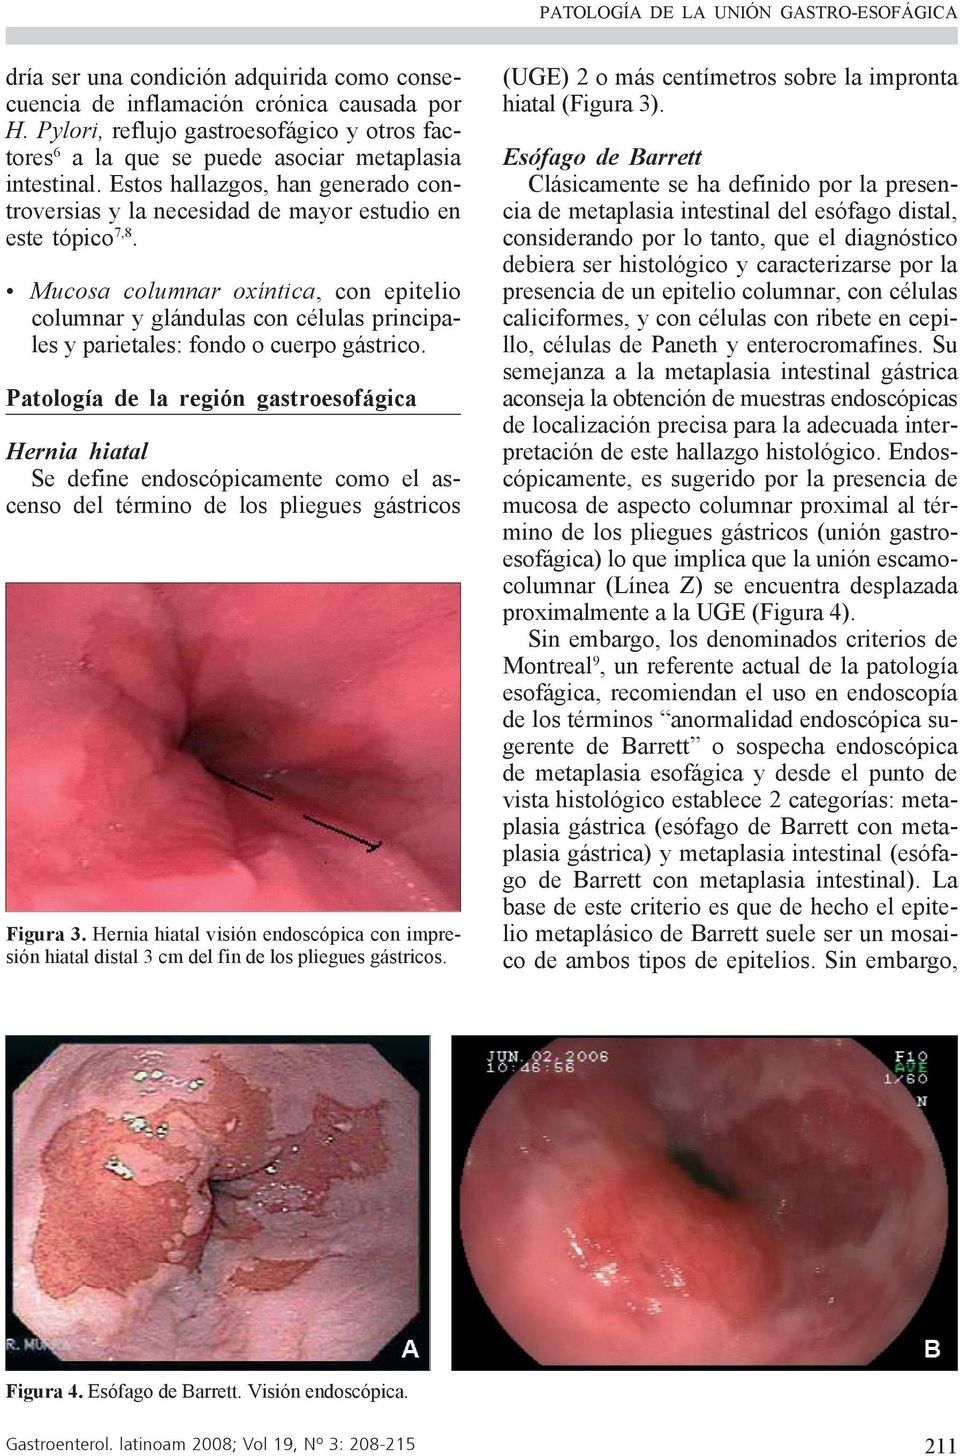 Mucosa columnar oxíntica, con epitelio columnar y glándulas con células principales y parietales: fondo o cuerpo gástrico.